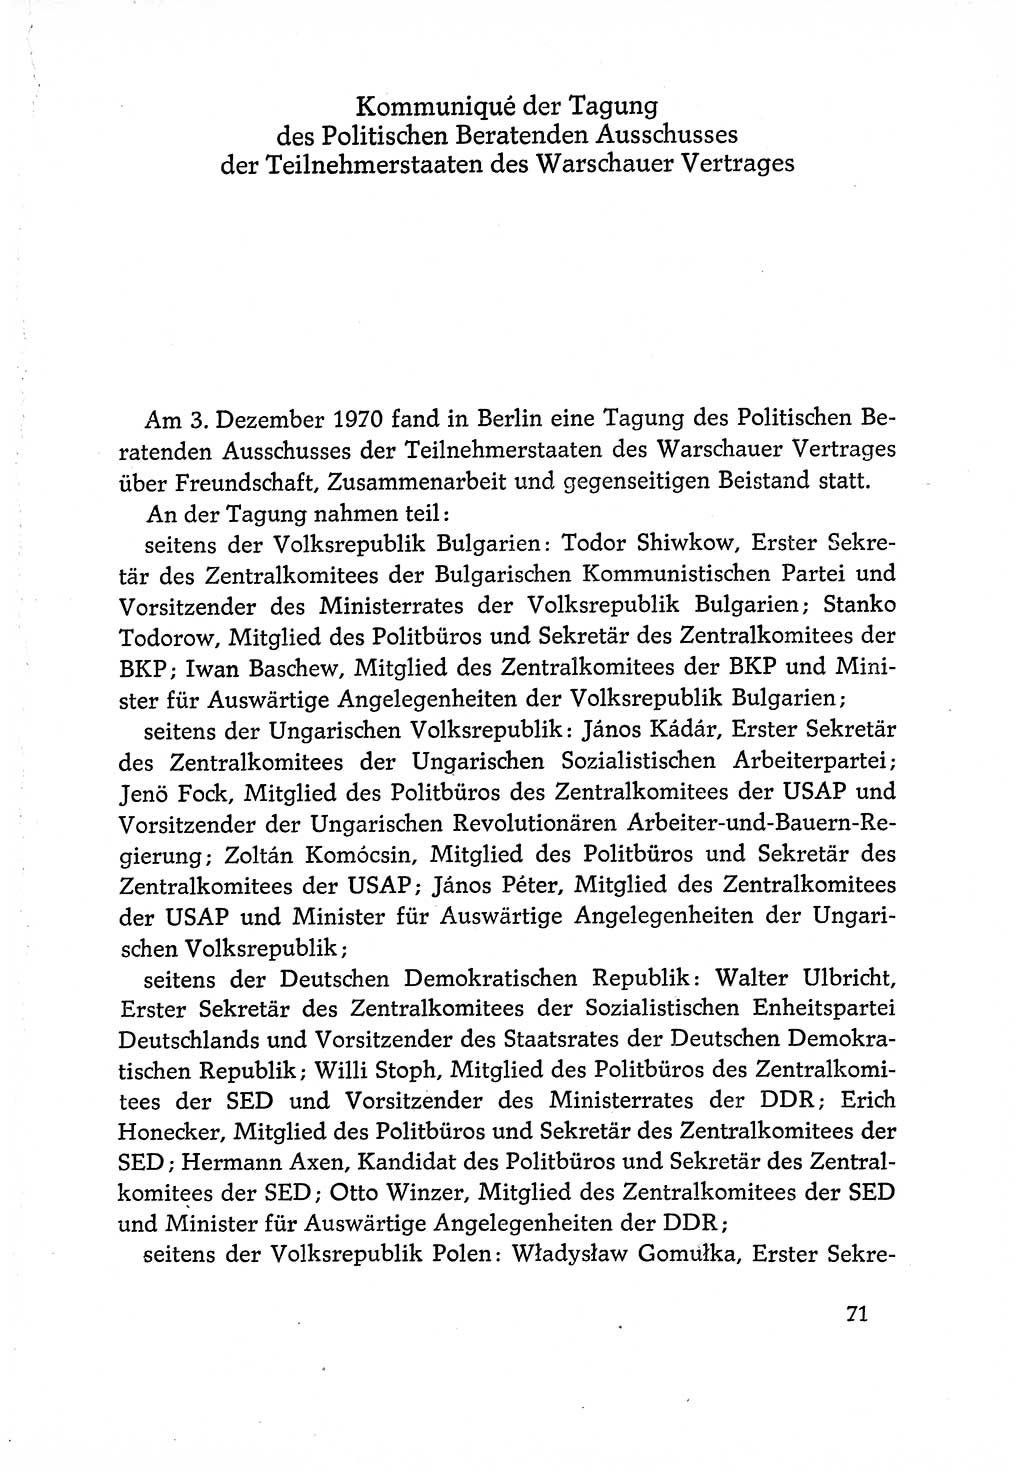 Dokumente der Sozialistischen Einheitspartei Deutschlands (SED) [Deutsche Demokratische Republik (DDR)] 1970-1971, Seite 71 (Dok. SED DDR 1970-1971, S. 71)